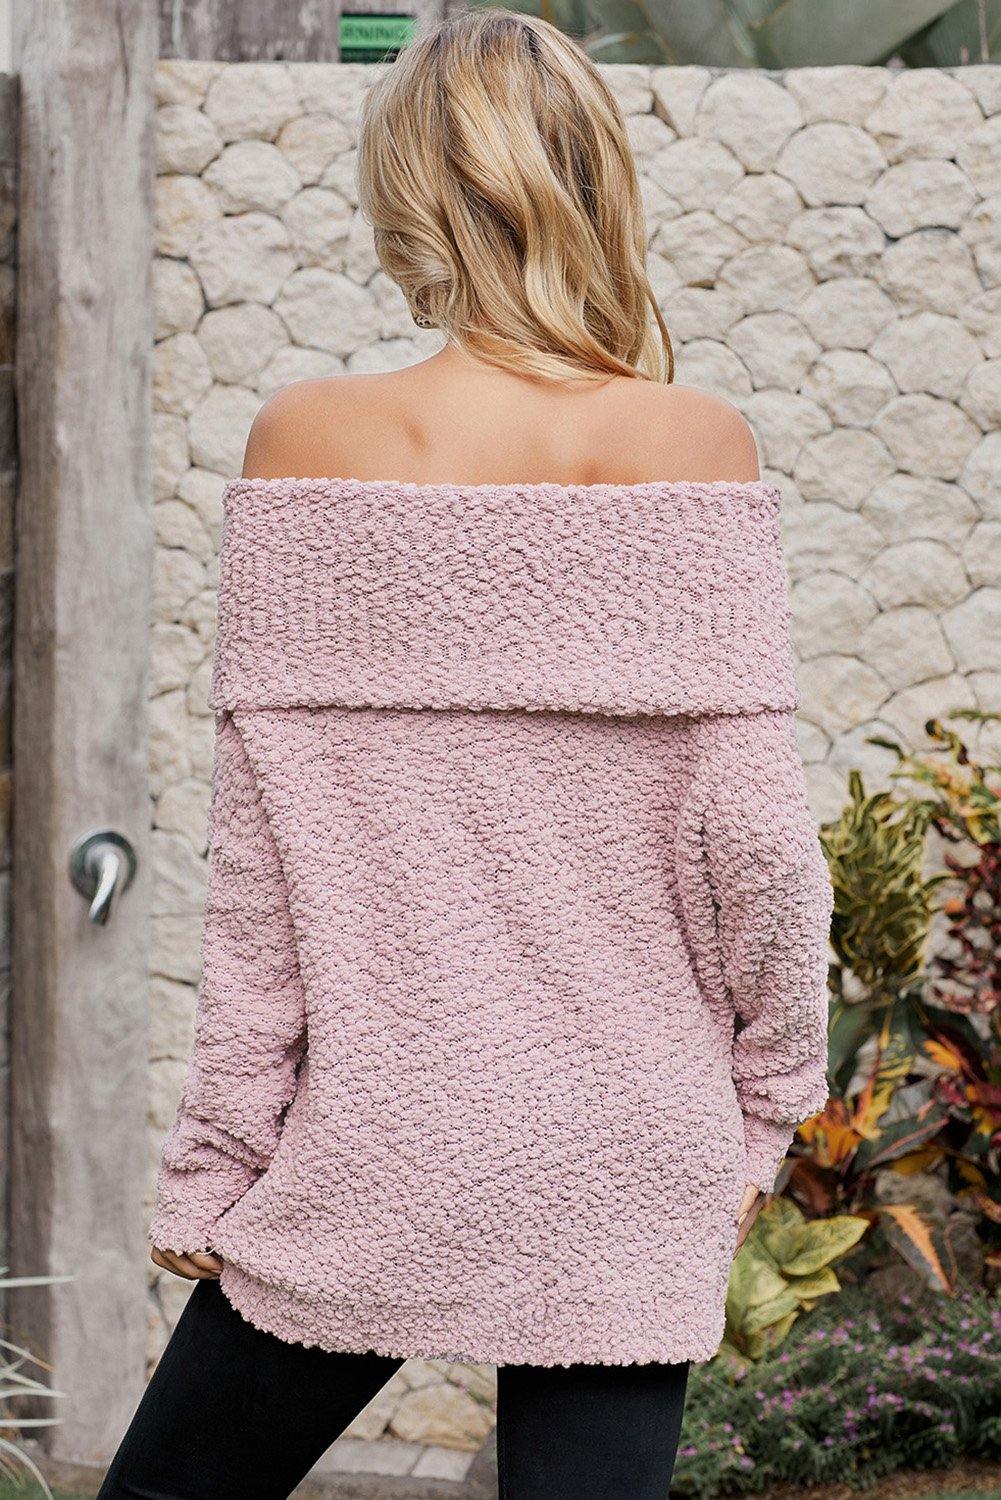 Off The Shoulder Comfy Sweater - L & M Kee, LLC